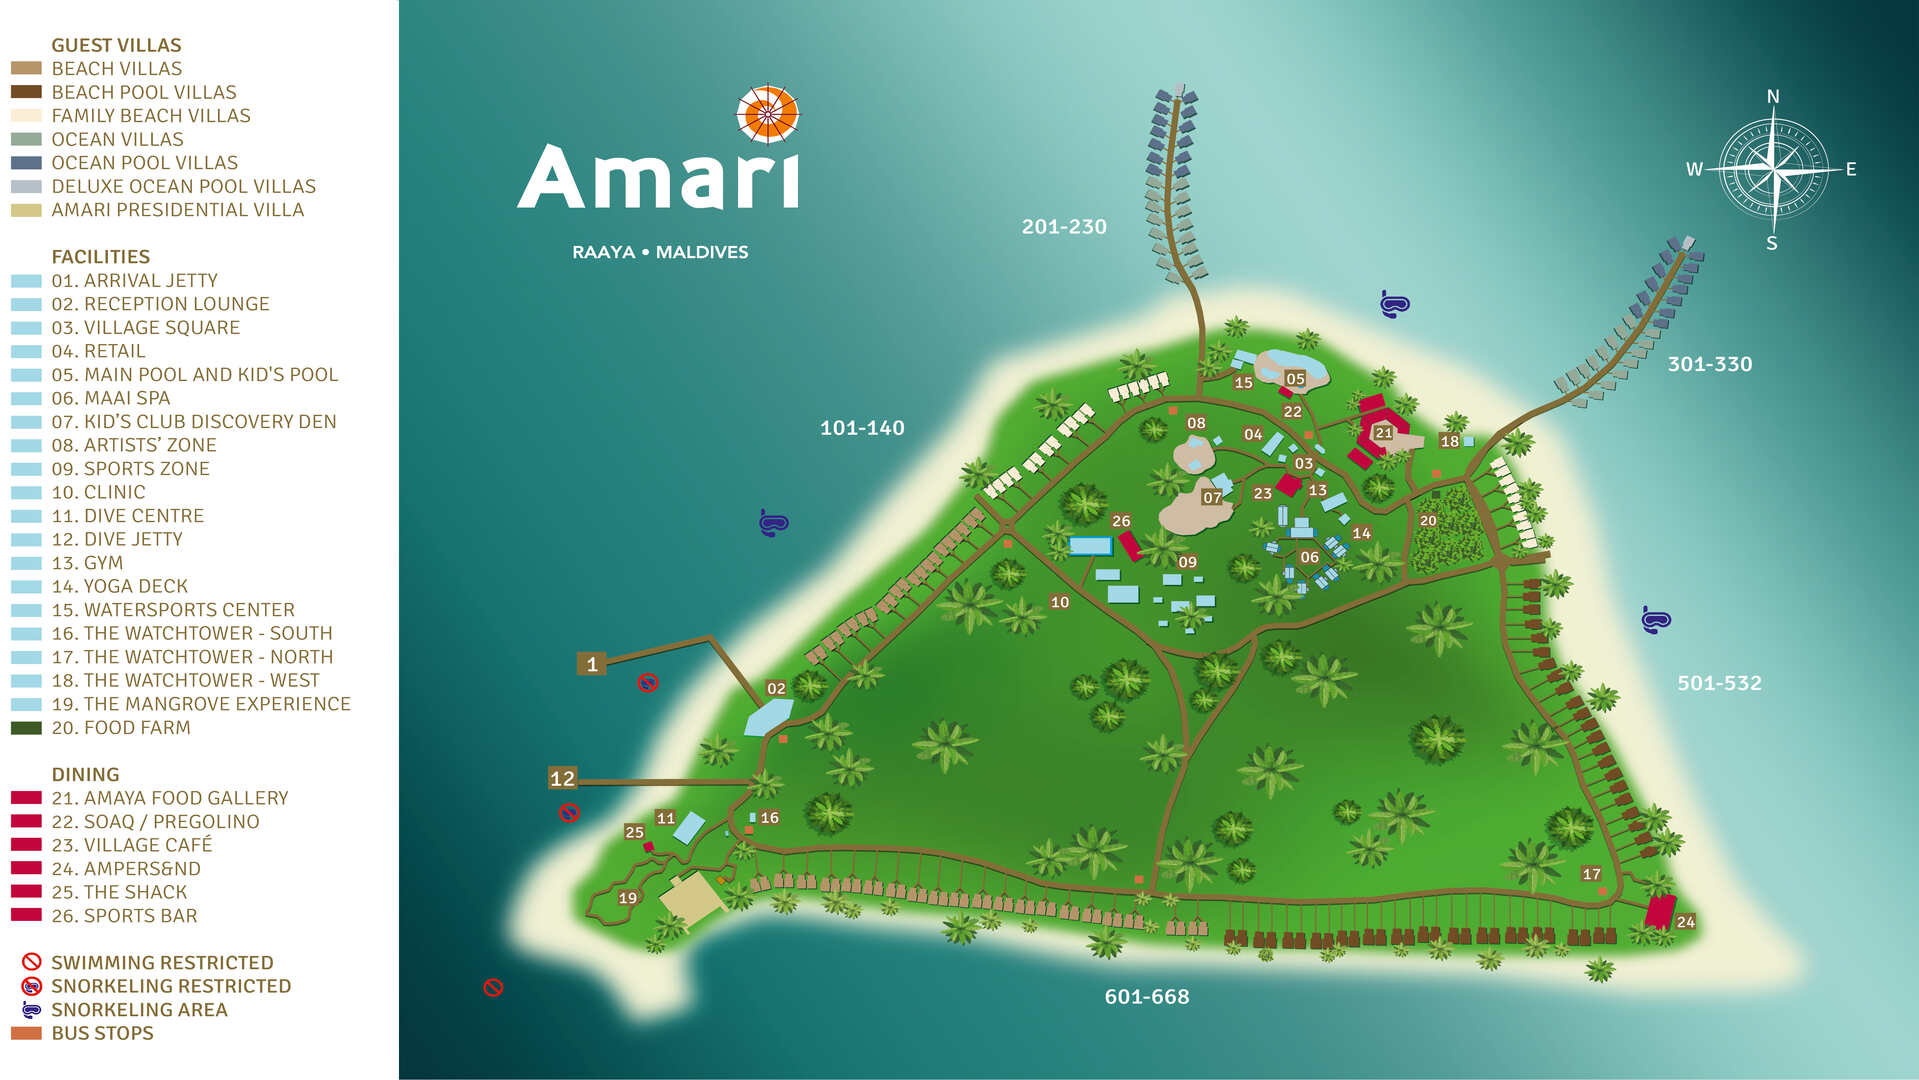 Resort Map - منتجع أماري رايا جزر المالديف